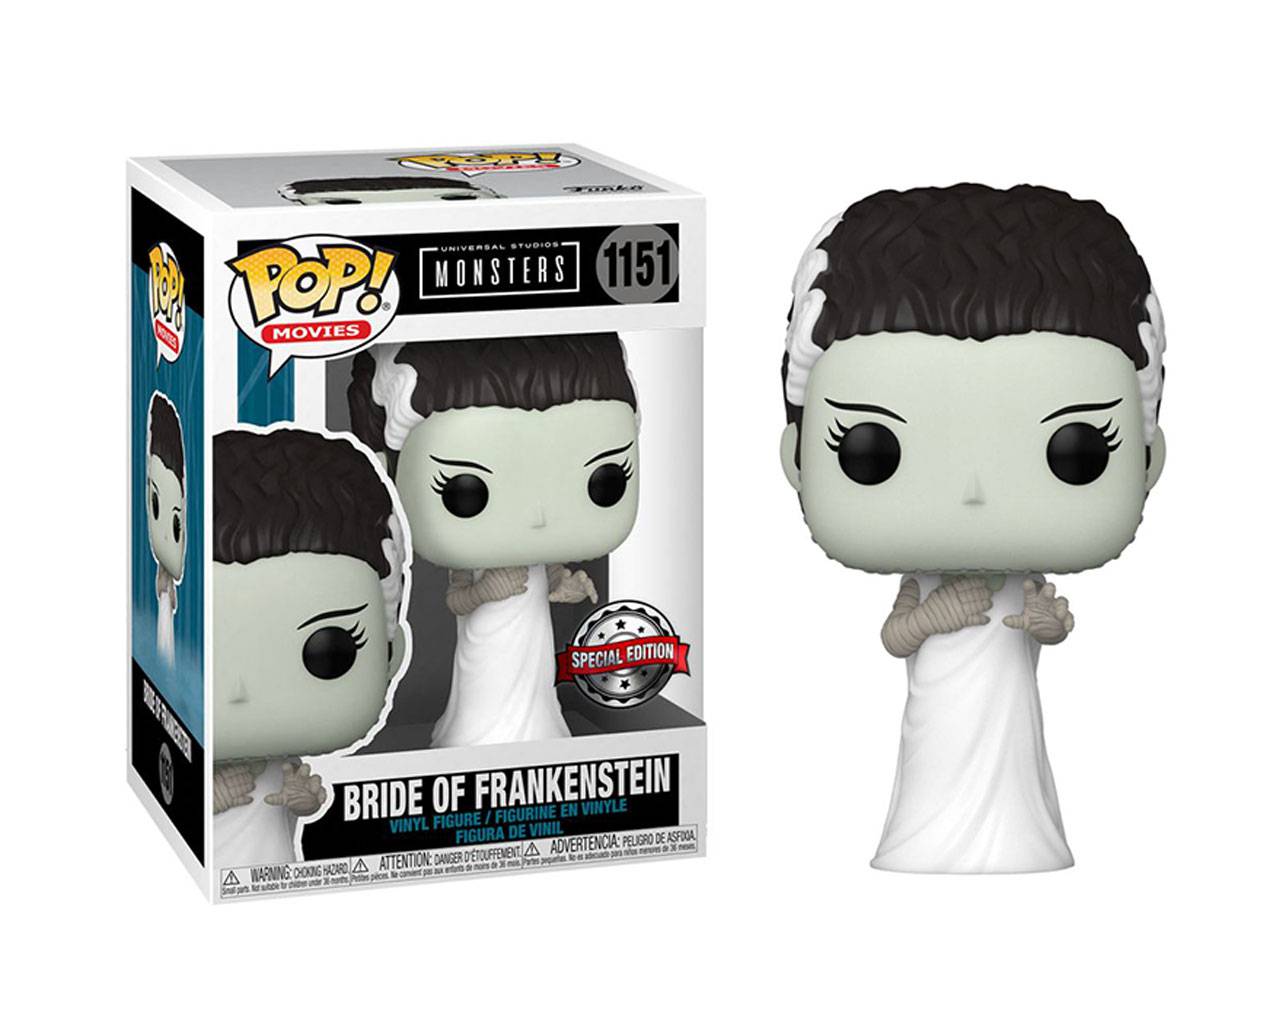 Bride of Frankenstein - Universal Studios Monsters Pop! Vinyl